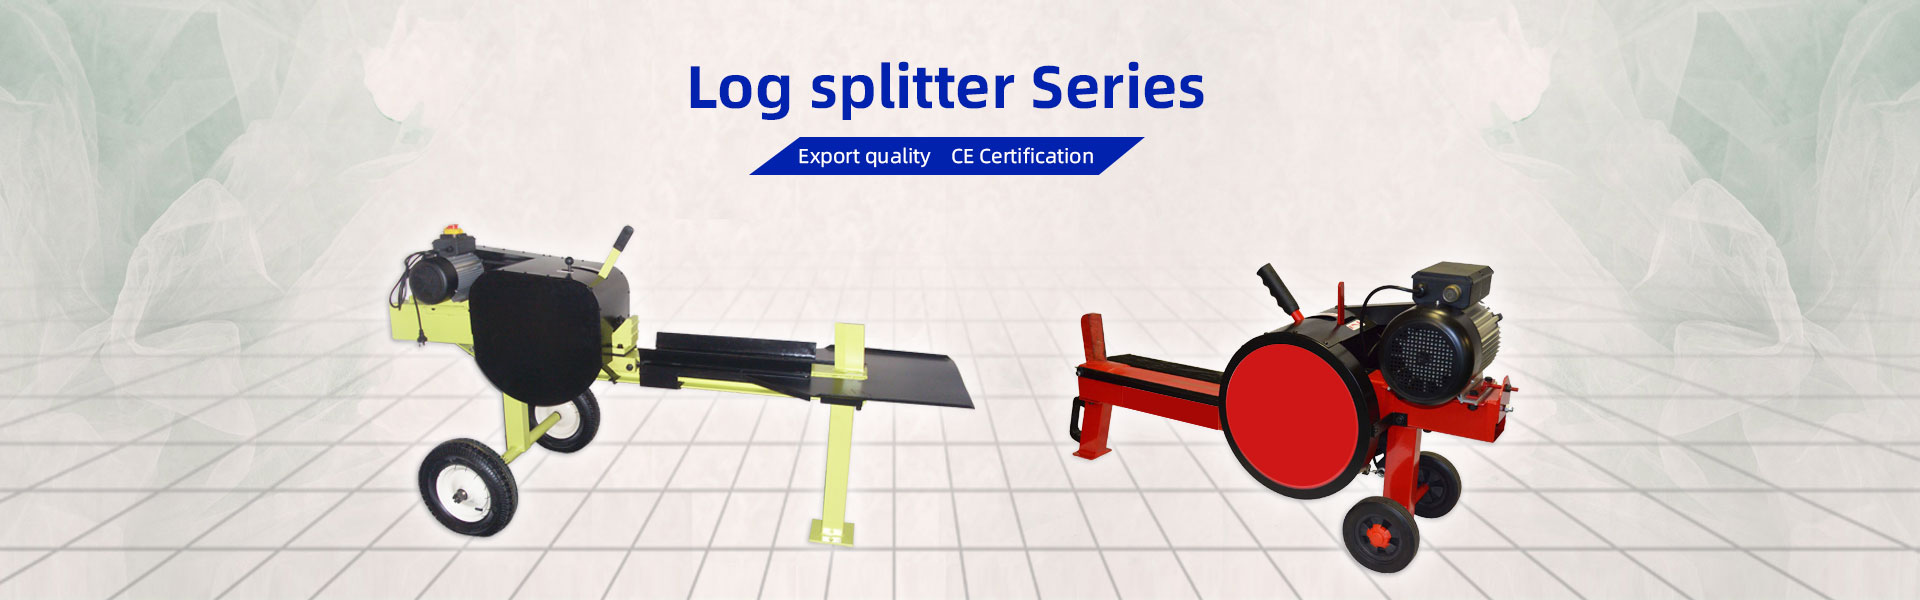 Log splitter Series